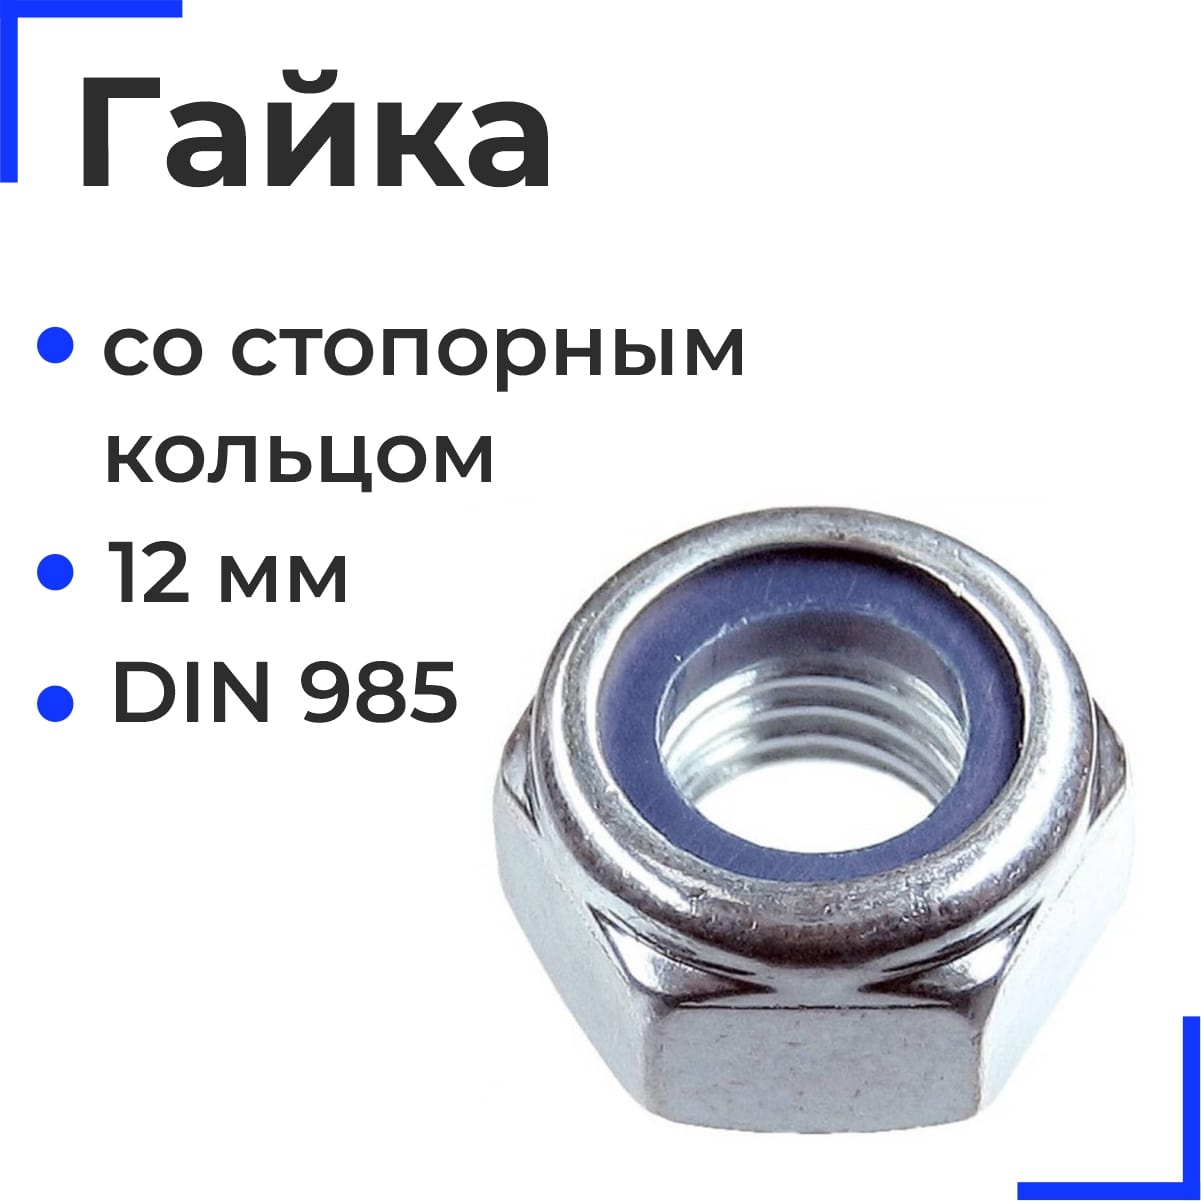 Гайка шестигранная со стопорным кольцом М12 DIN 985